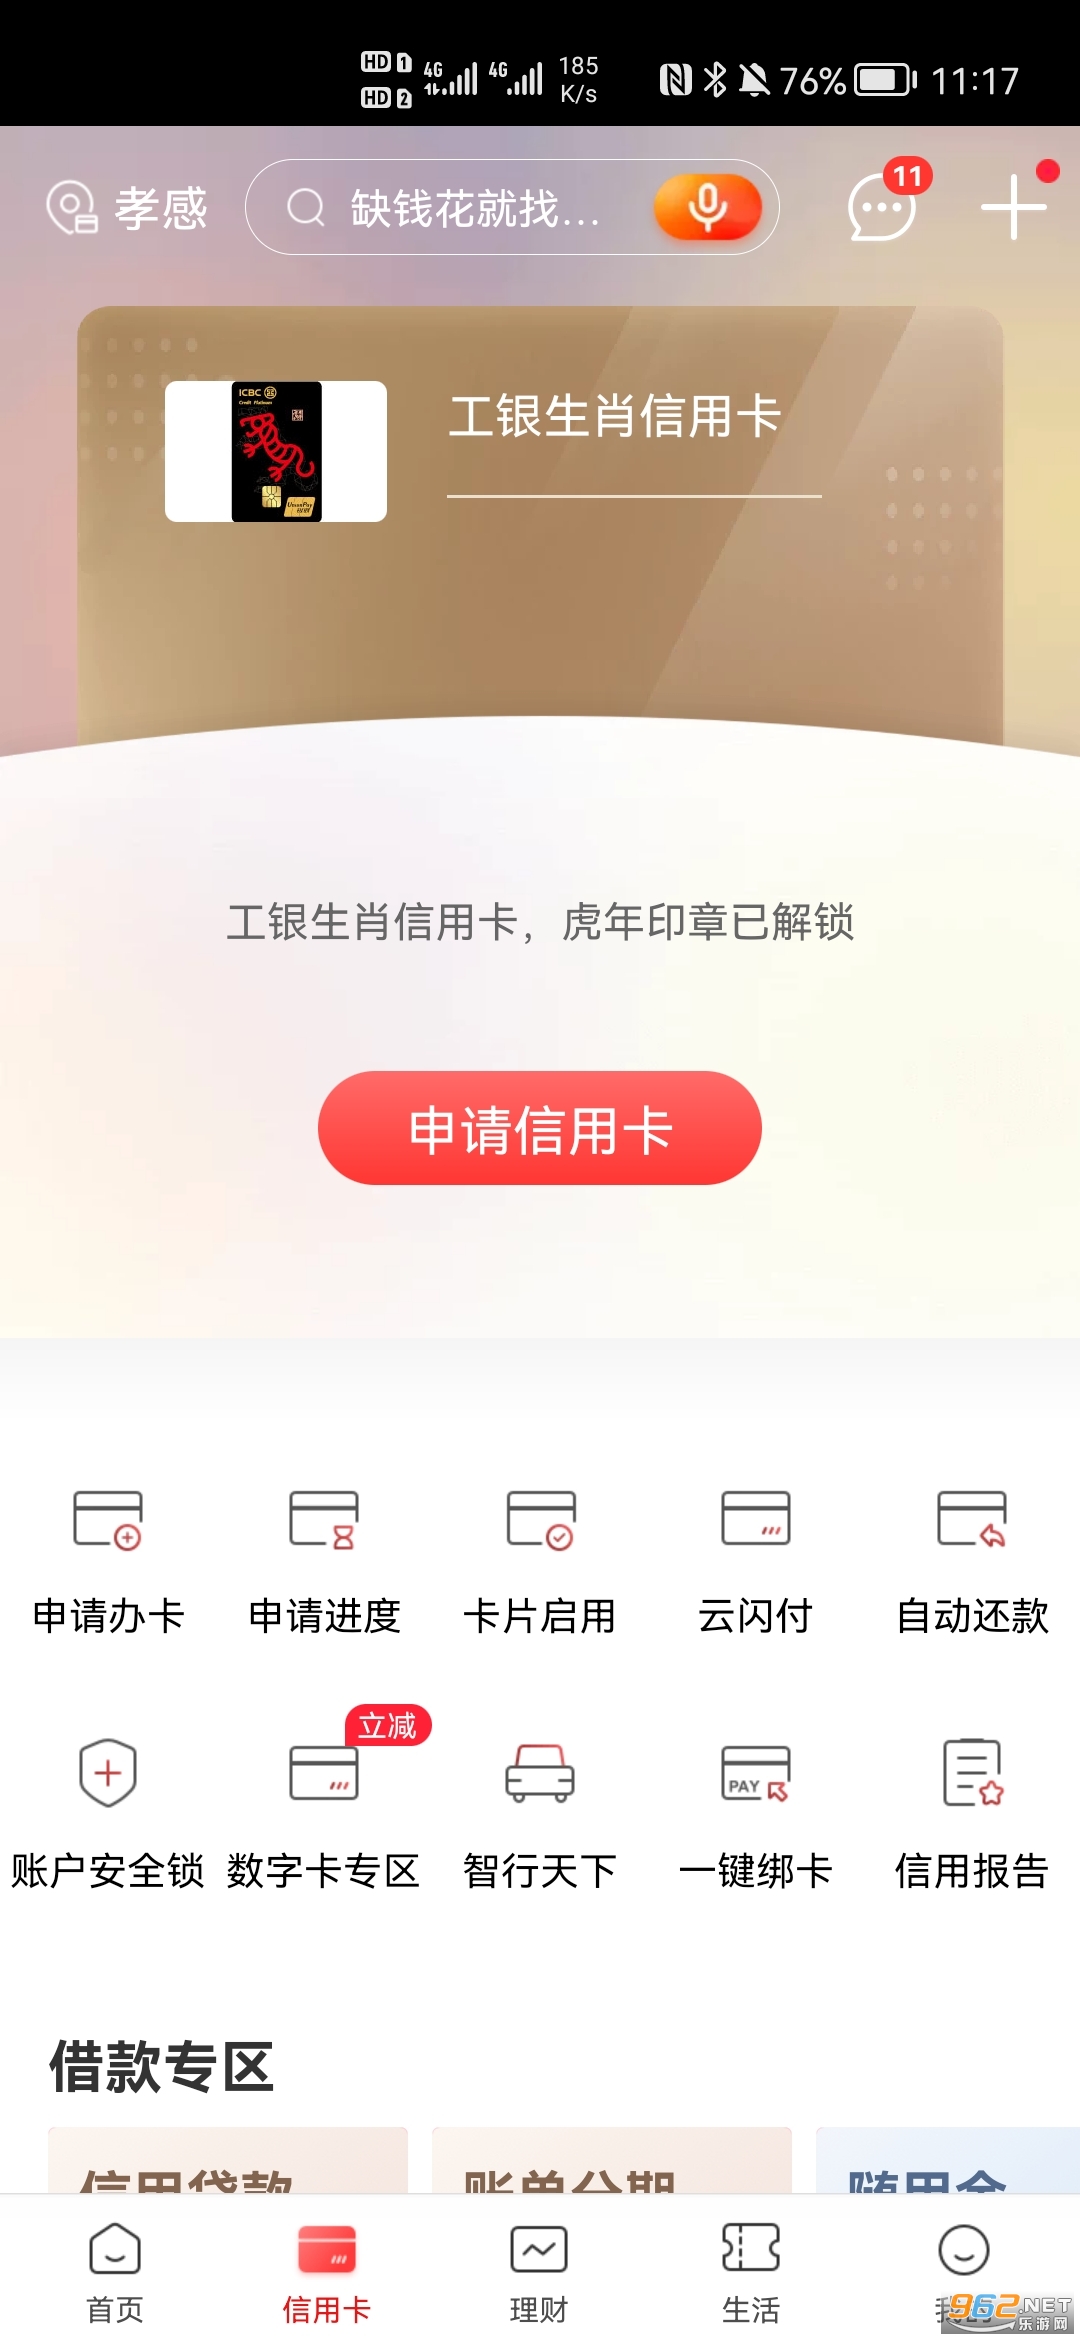 中国工商银行手机银行 最新版v7.0.1.2.6